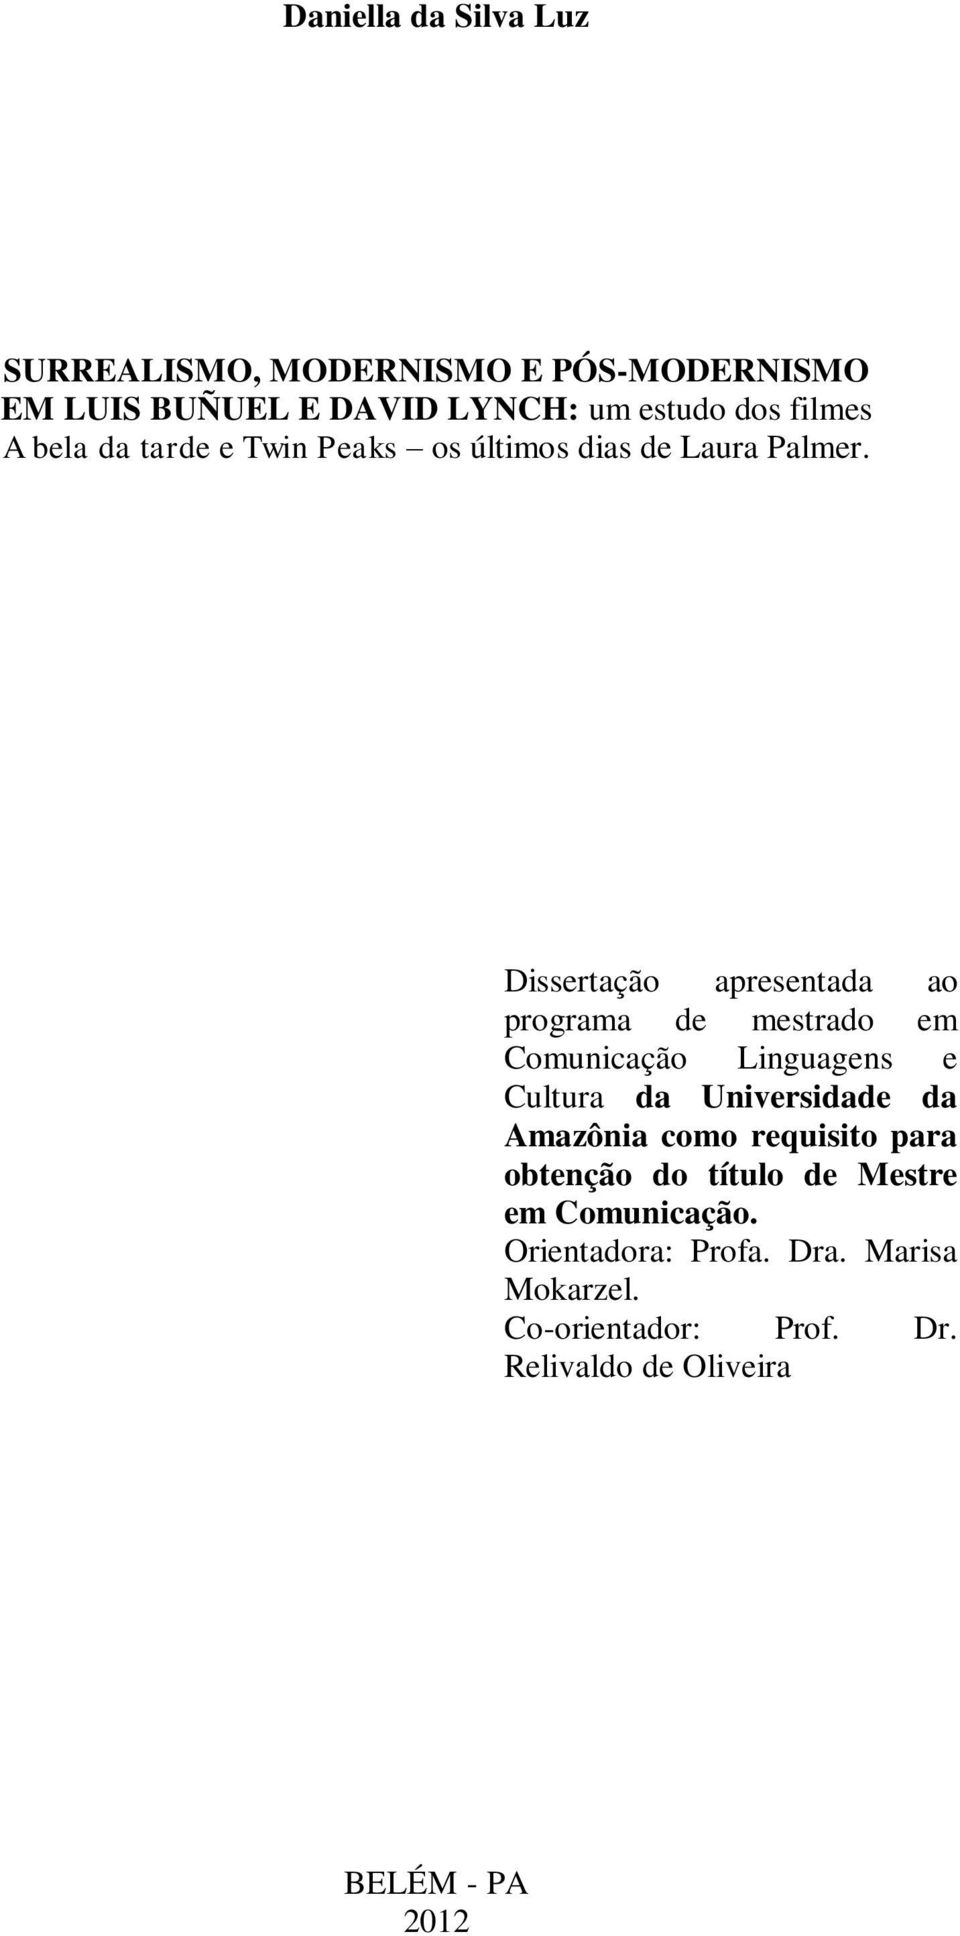 Dissertação apresentada ao programa de mestrado em Comunicação Linguagens e Cultura da Universidade da Amazônia